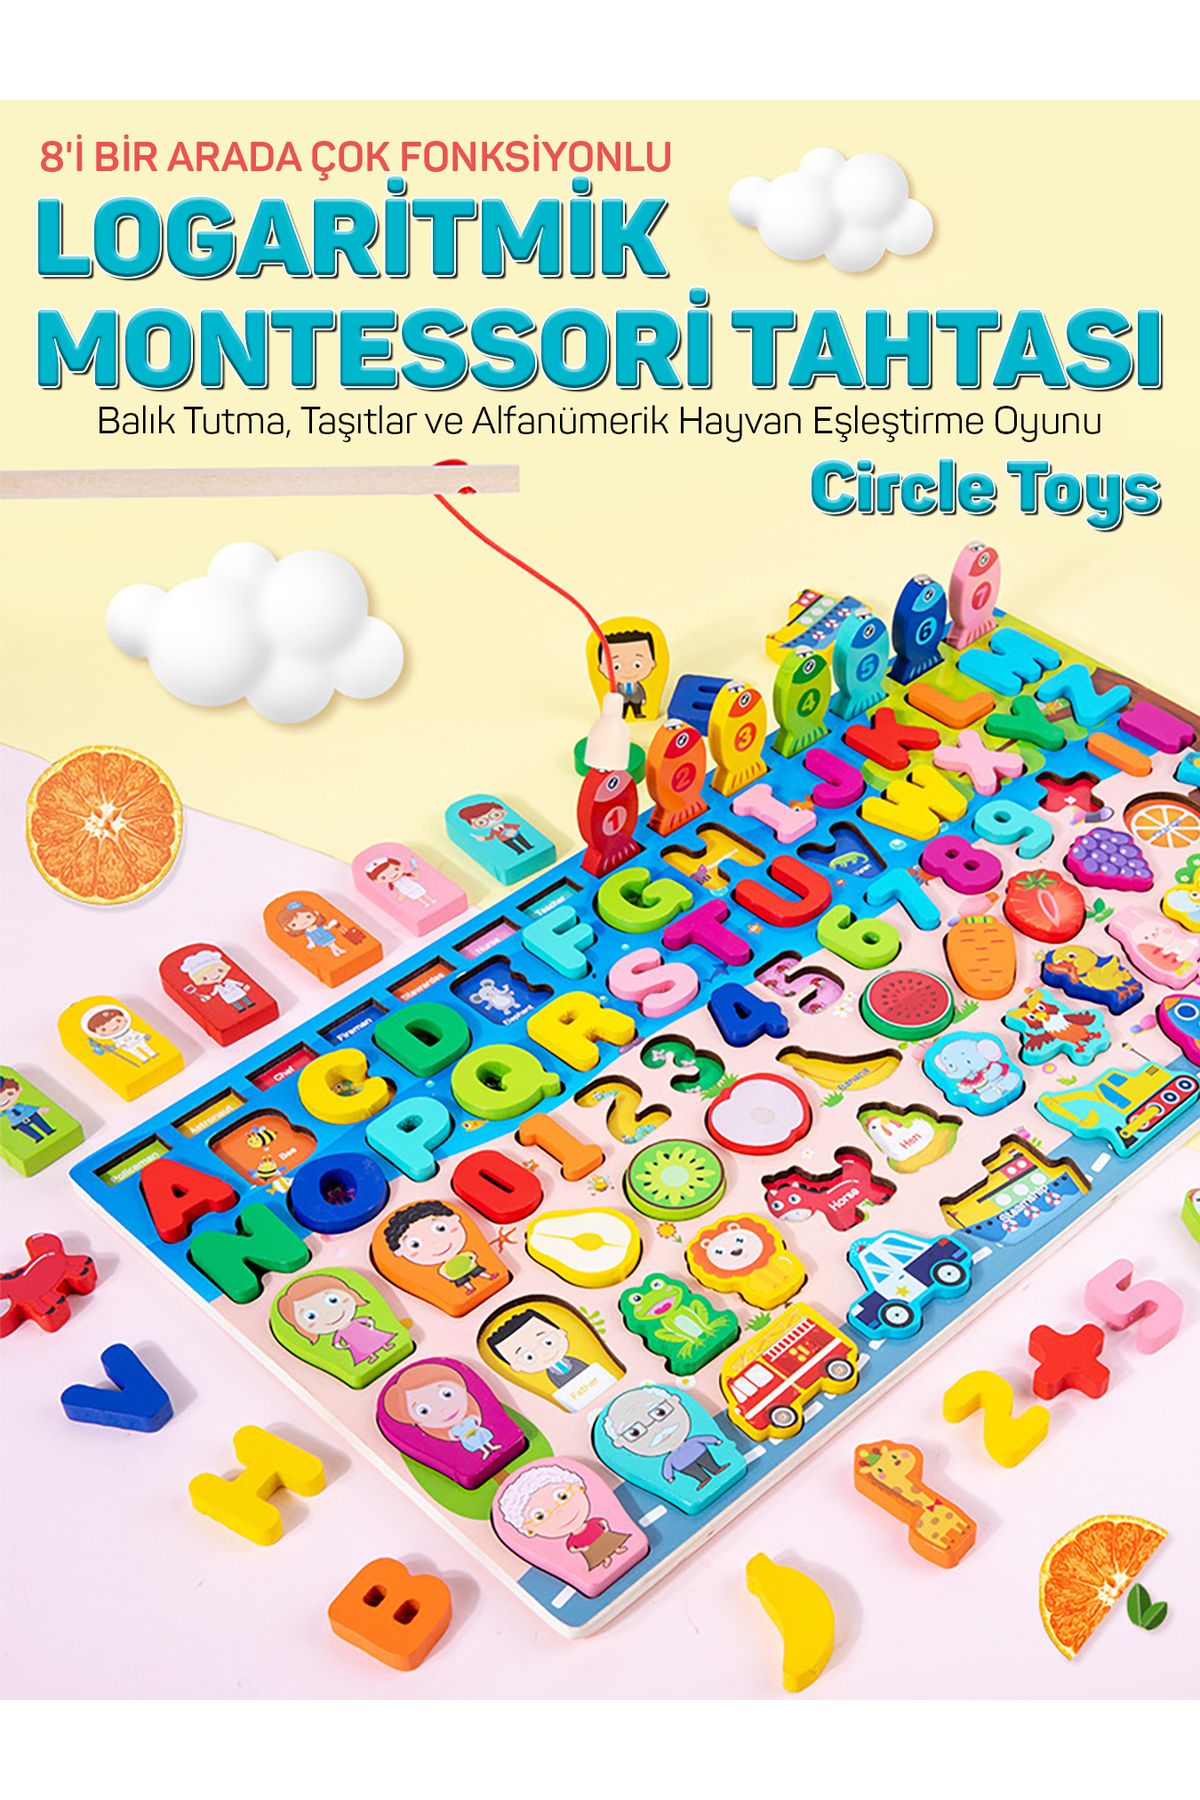 Circle Toys Montessori Tahtası 8'i Bir Arada Çok Fonksiyonlu Balık Tutma Ve Eşleştirme Macerası